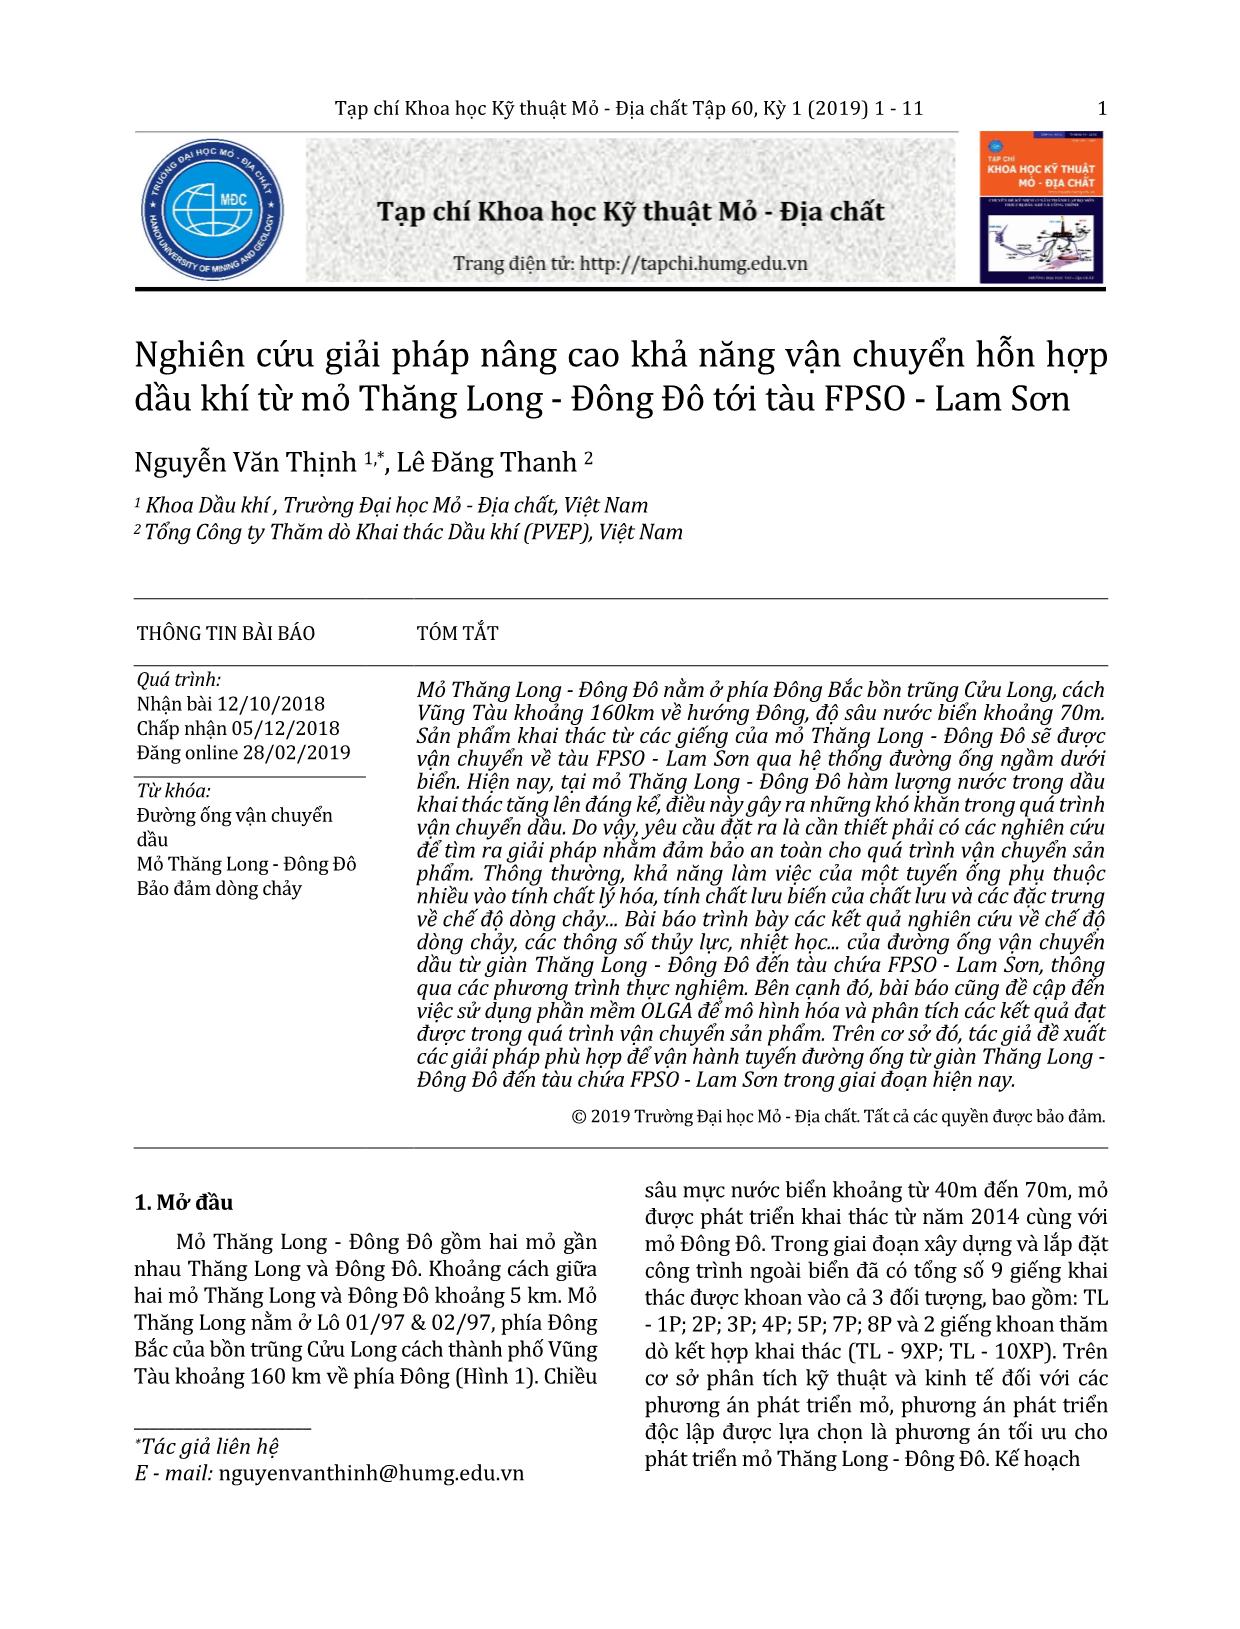 Nghiên cứu giải pháp nâng cao khả năng vận chuyển hỗn hợp dầu khí từ mỏ Thăng Long - Đông Đô tới tàu FPSO - Lam Sơn trang 1